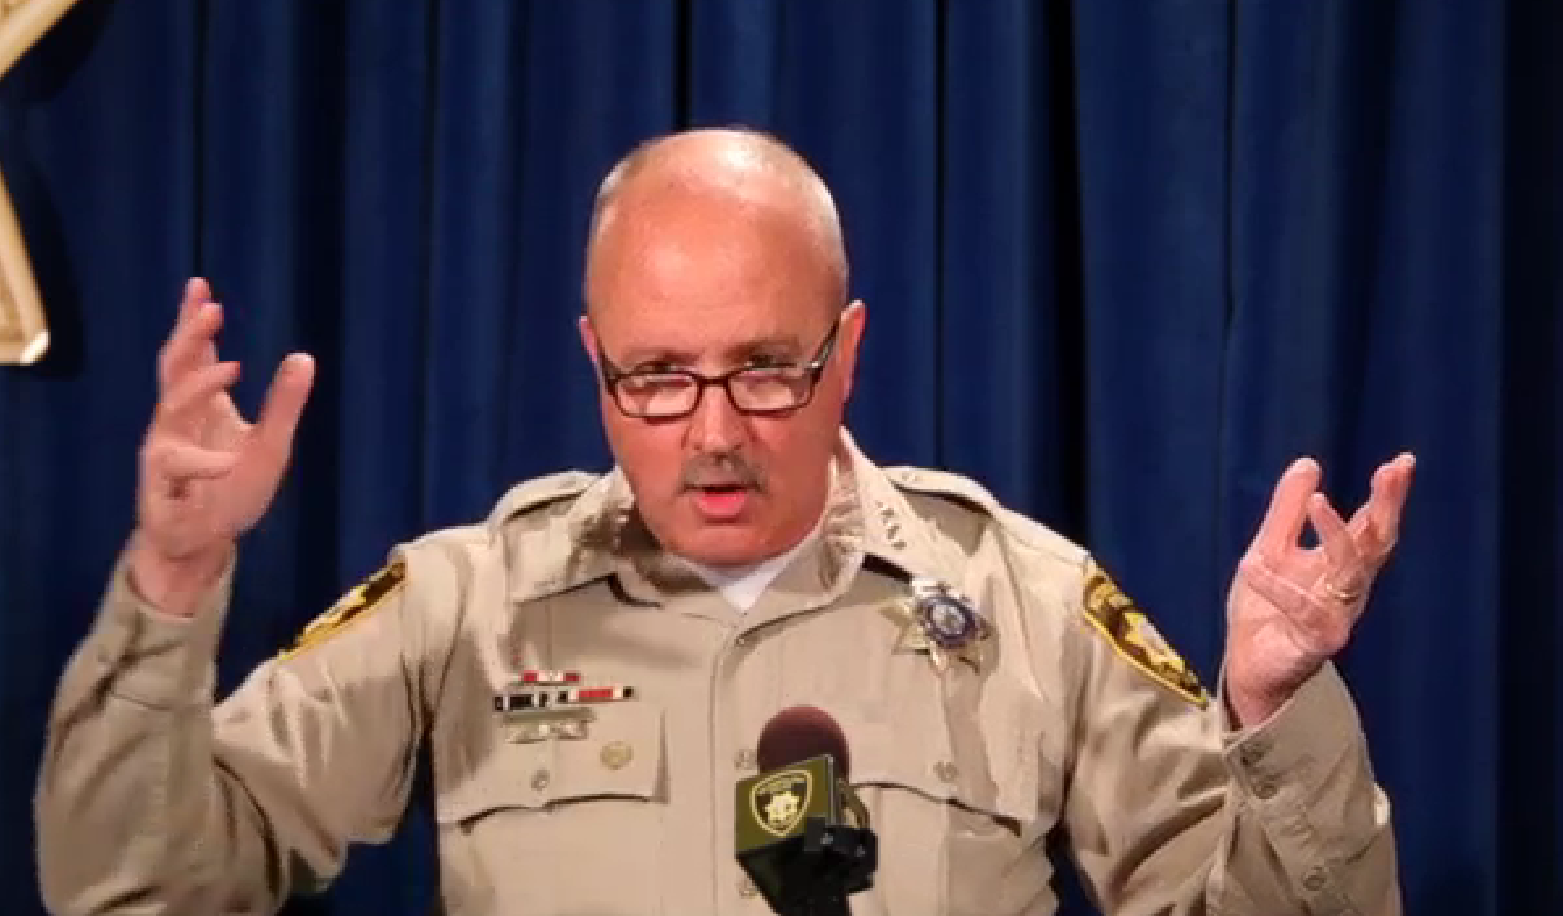 Undersheriffen Jim Dixon, Las Vegas-polisen, menar att situationen uppstod eftersom den skjutne inte gjorde som Dixons kollega sade: Visa händerna.  